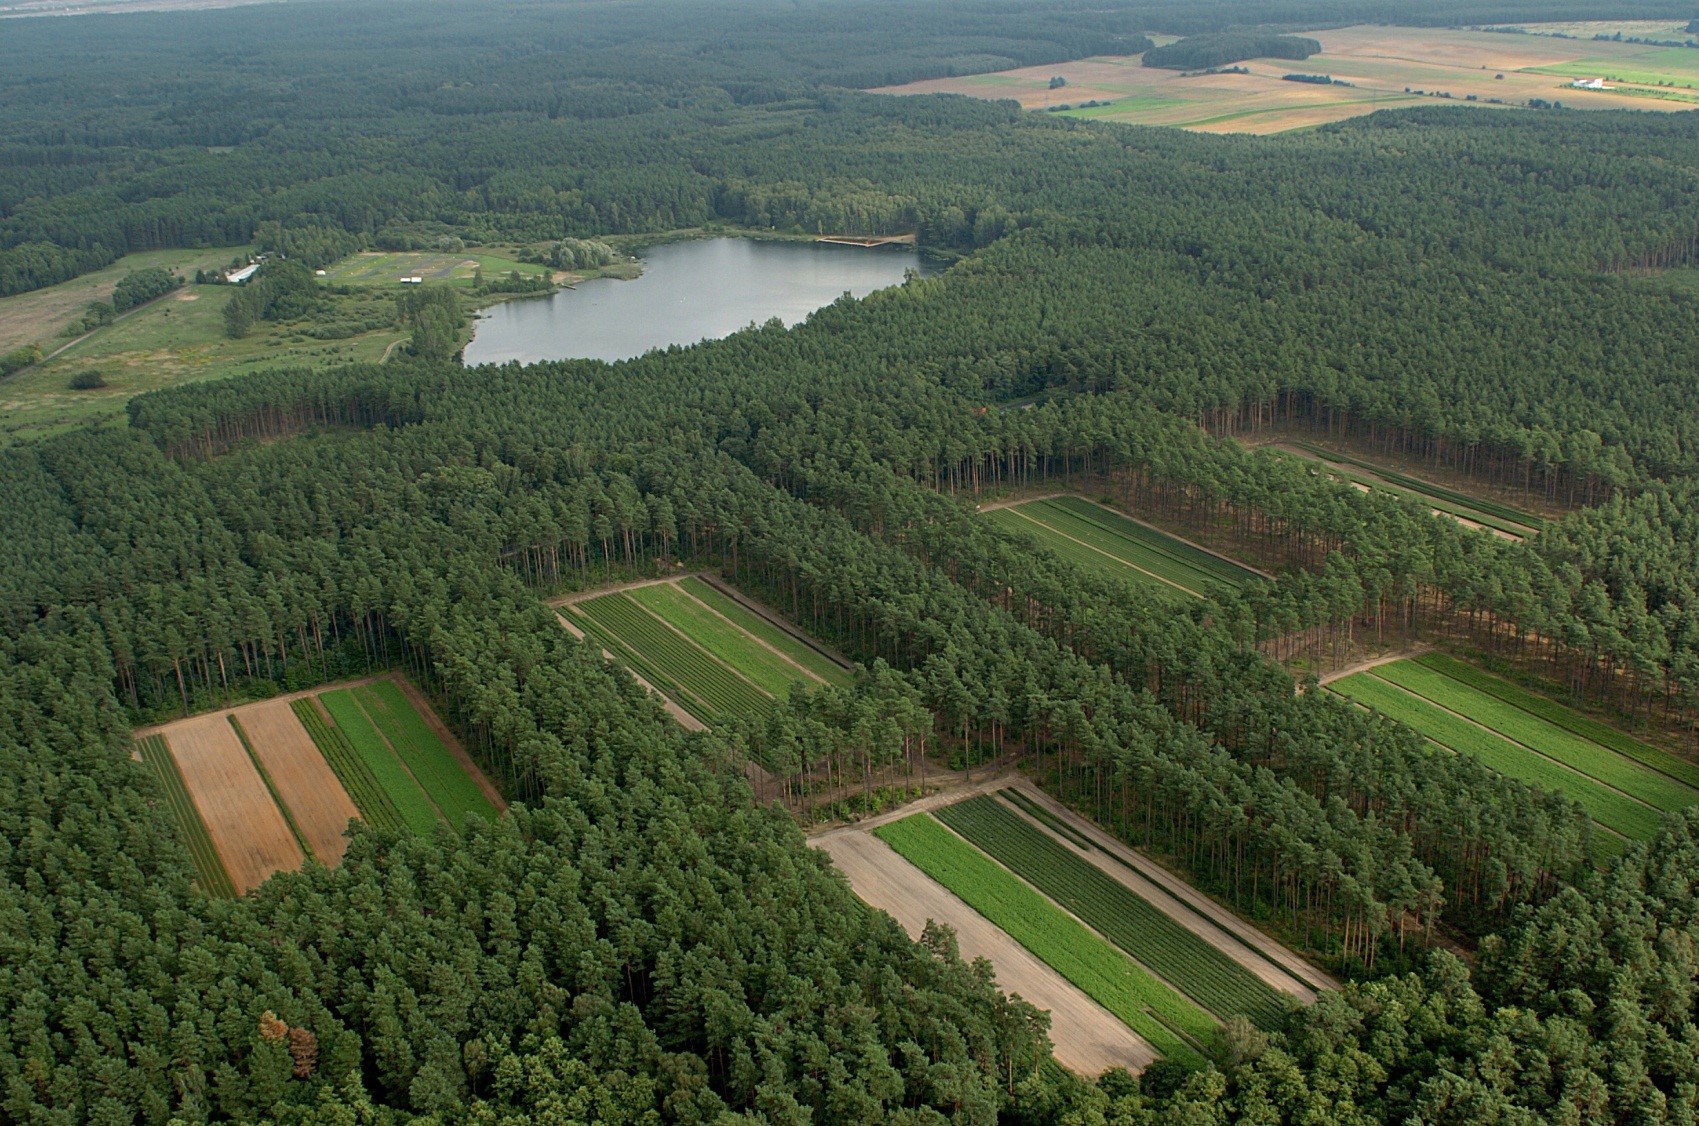 Zdjęcie zrobione z lotu ptaka przedstawia kwatery na szkółce leśnej oraz okoliczne lasy i jezioro